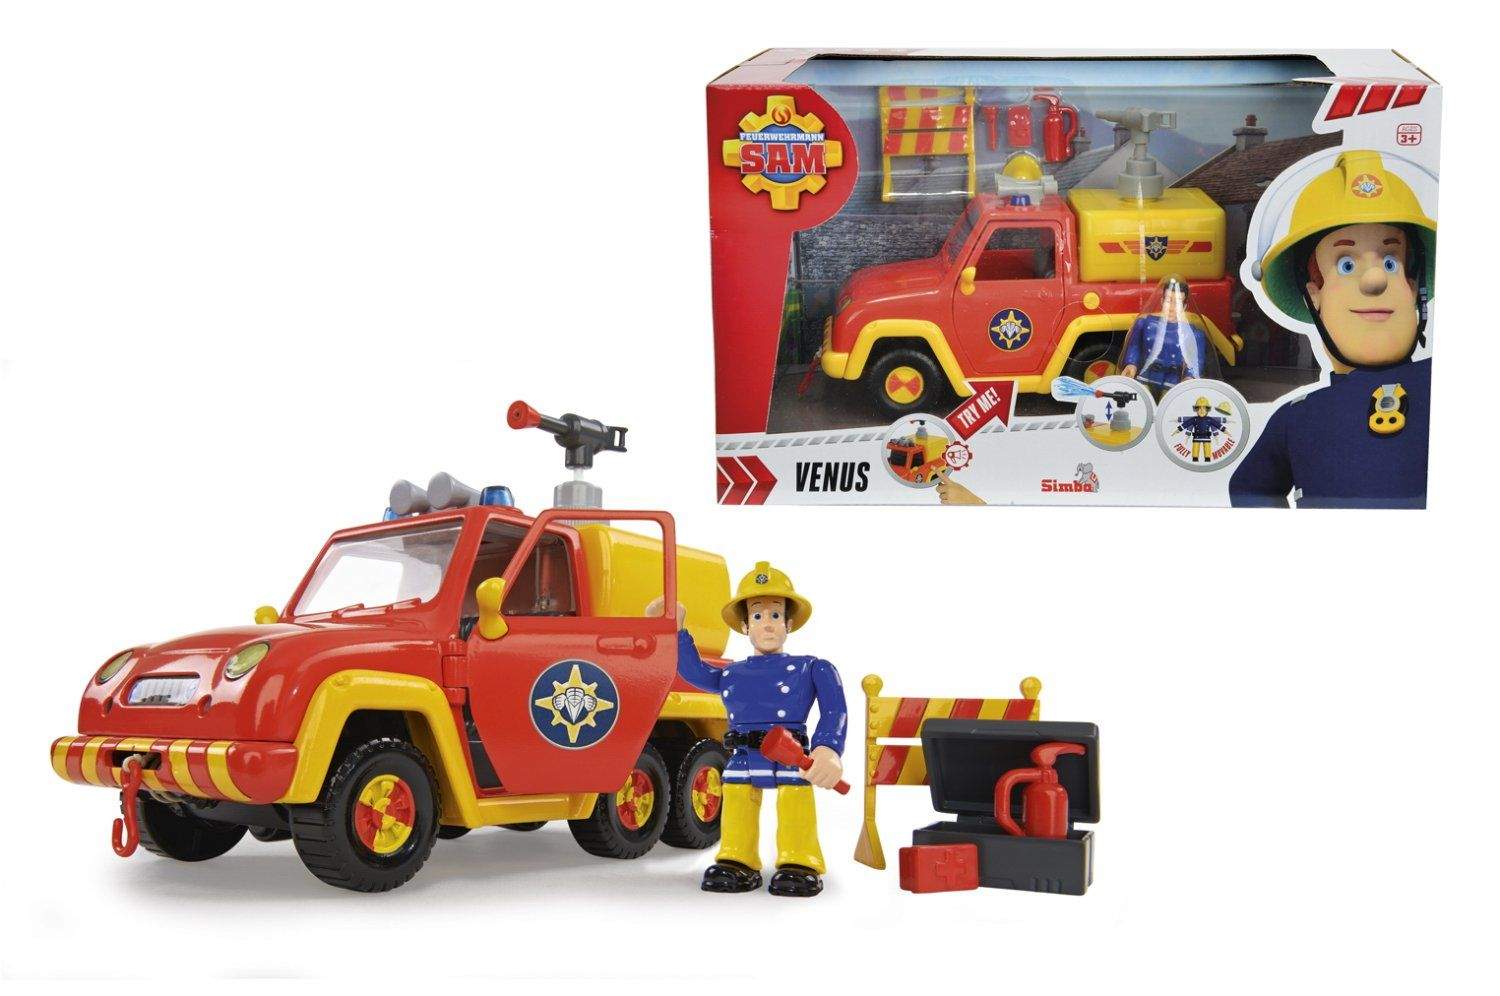 Купить игрушку пожарный. Пожарный Сэм машина Венус. Игровой набор Simba Fireman Sam машинка 9251054. Пожарный Сэм Симба. Пожарный Сэм игрушки пожарная машина.